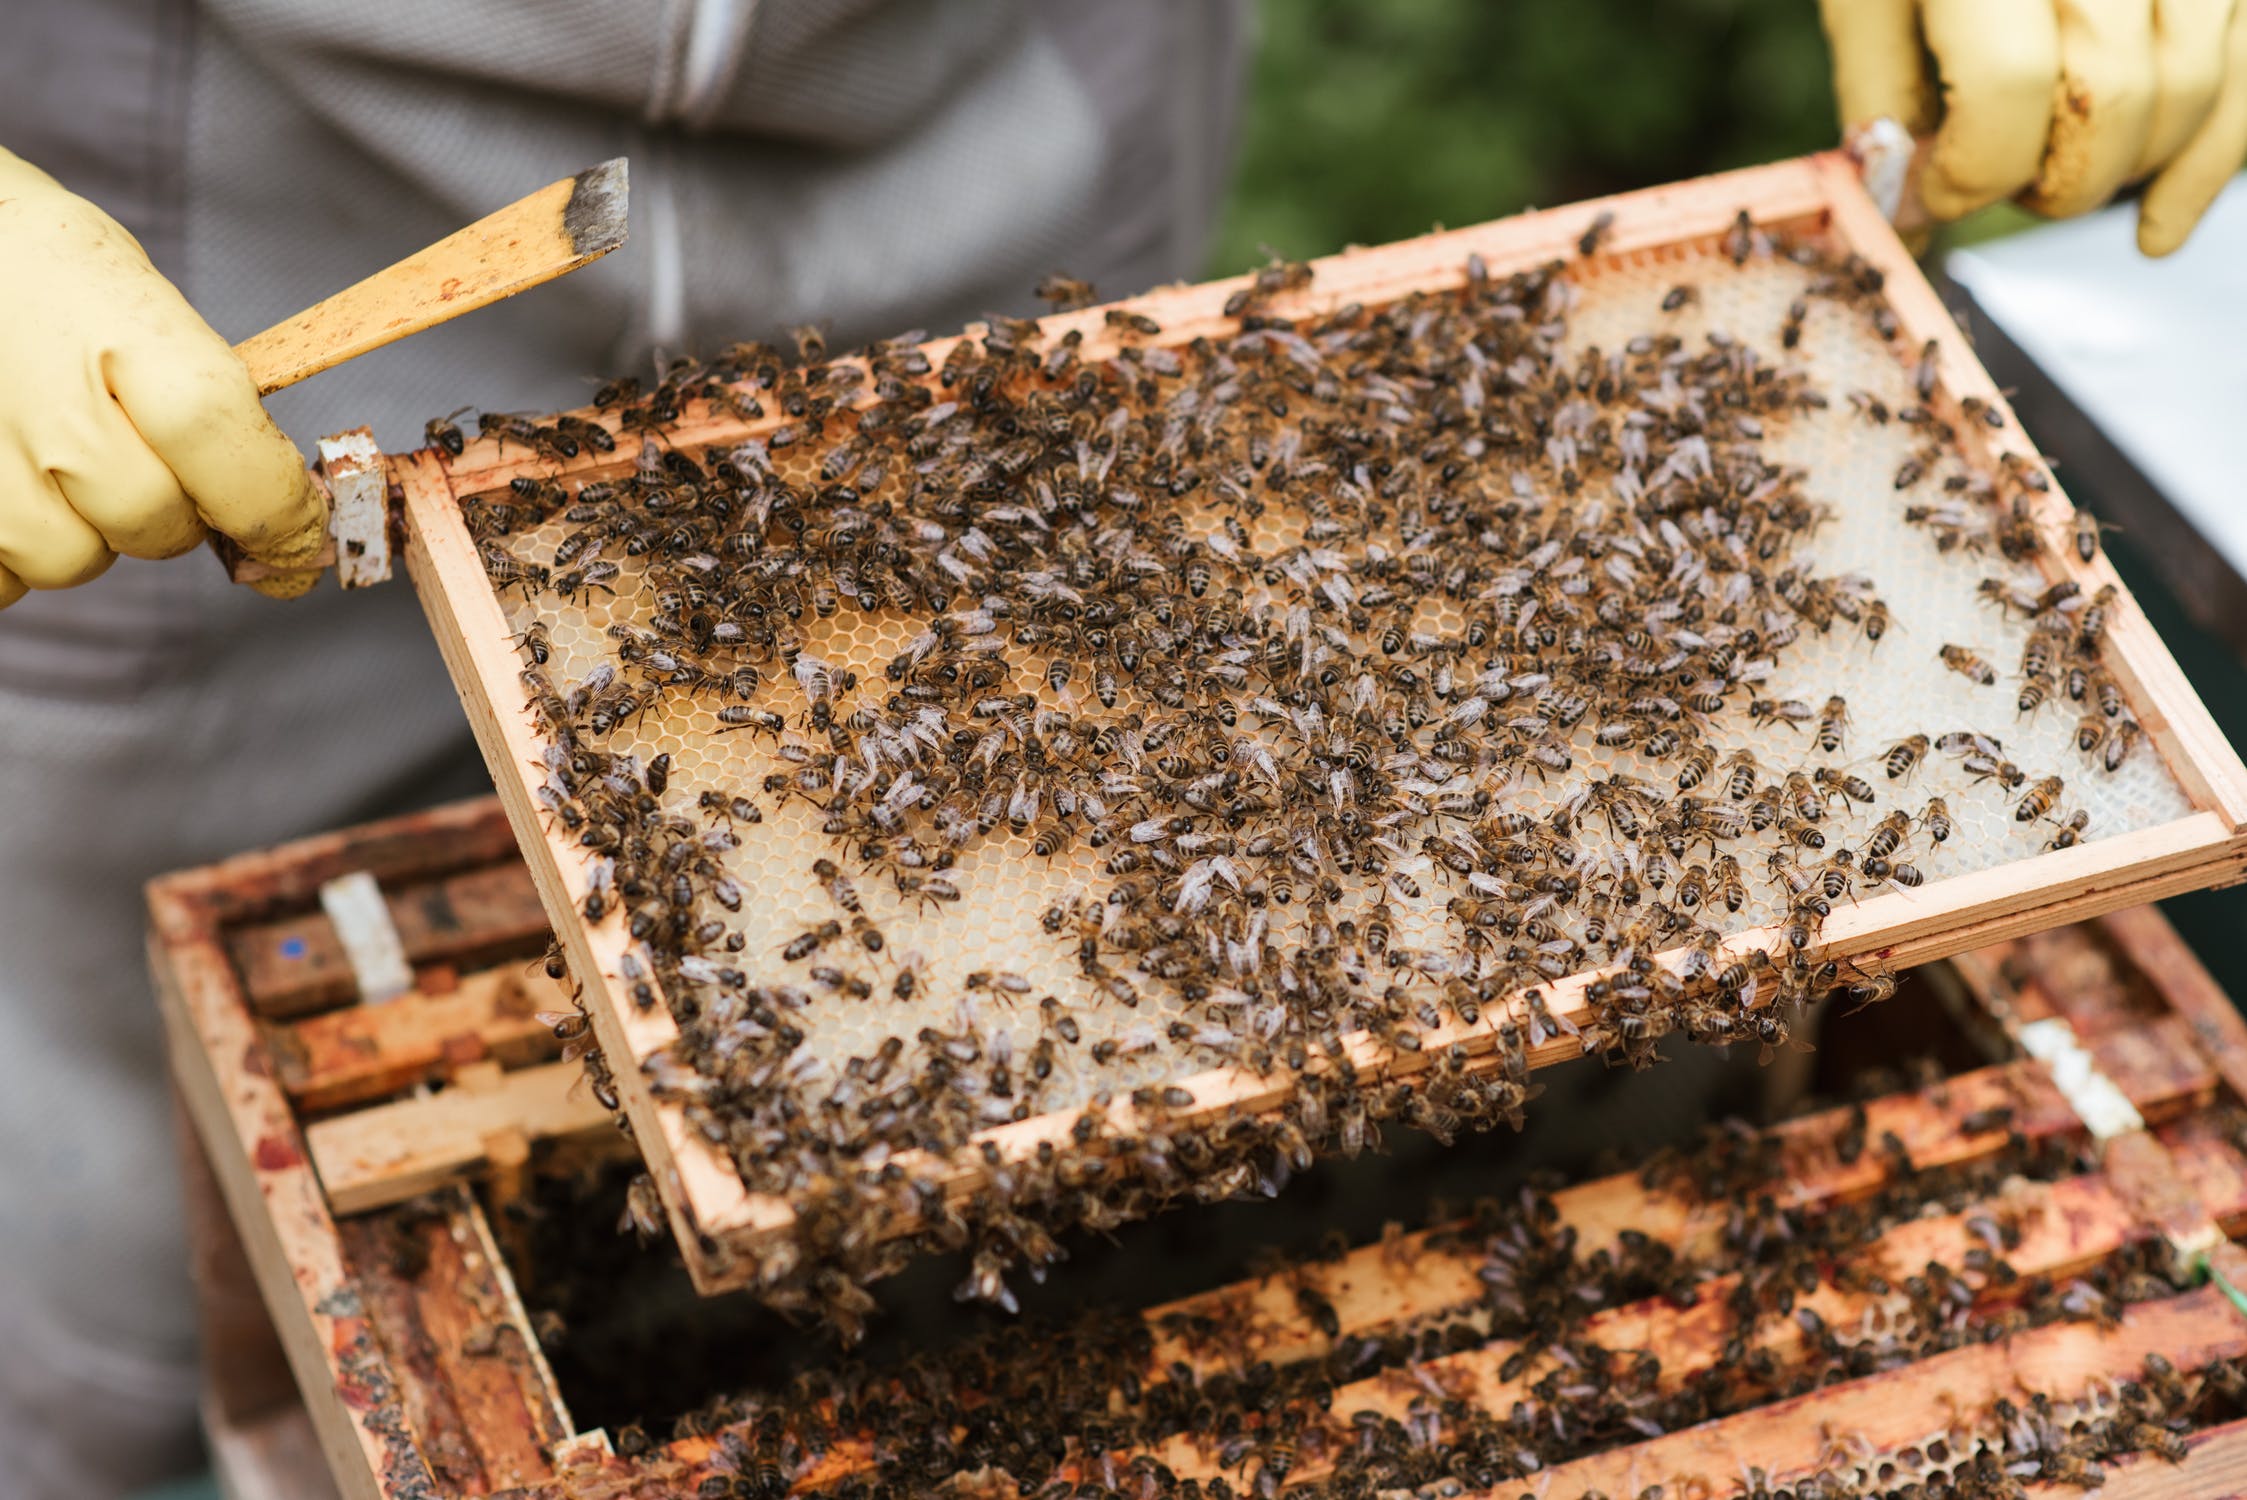 Nahaufnahme eines Bienenstockrahmens, den Beeker aus dem Bienenstock genommen hat.